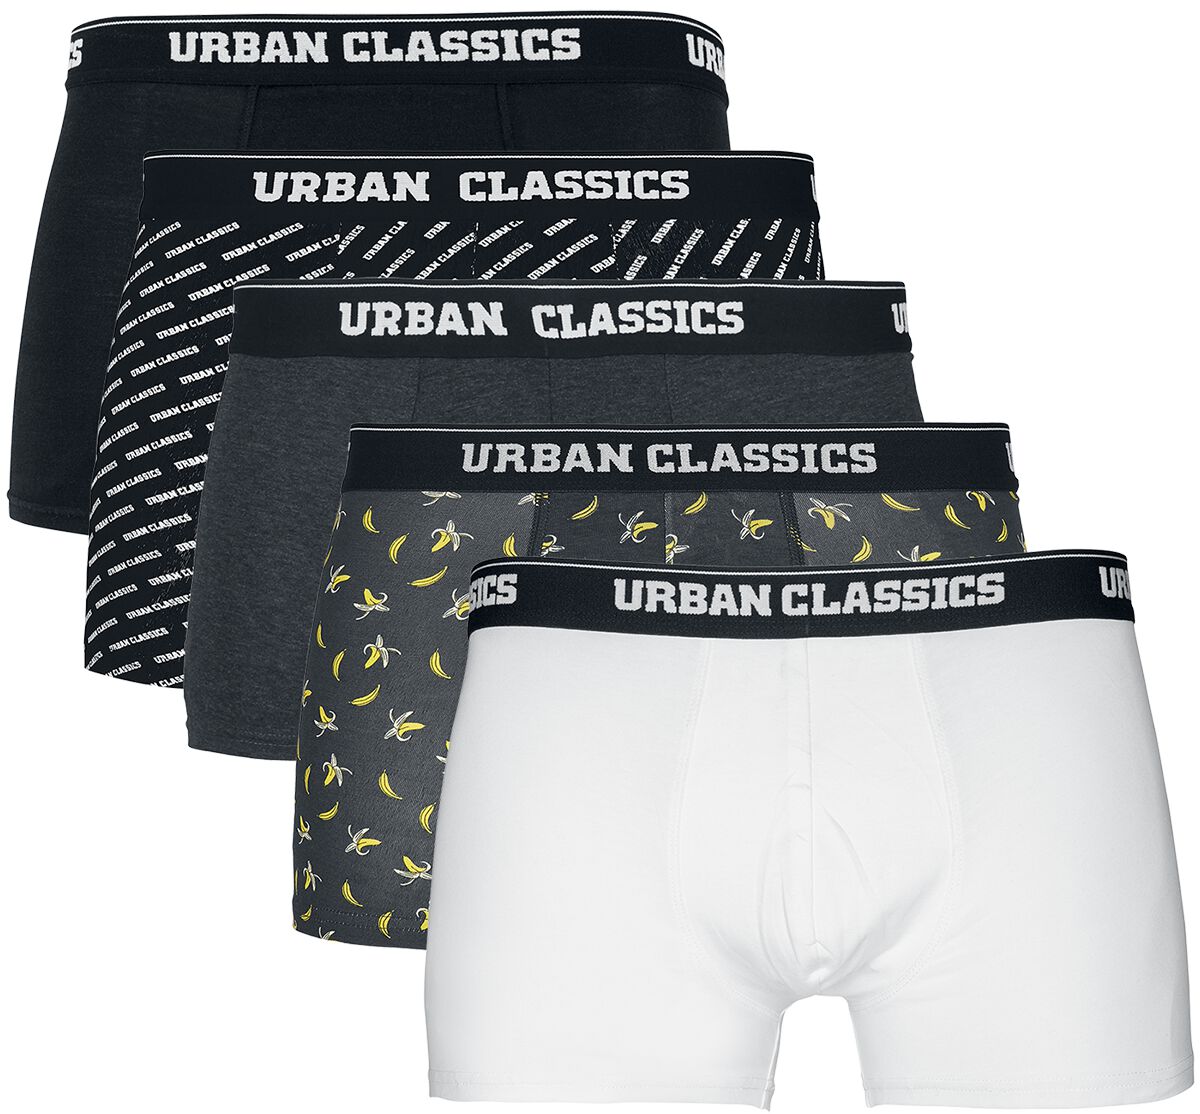 Urban Classics Boxershort-Set - Boxer Shorts 5-Pack - S bis XXL - für Männer - Größe M - schwarz/grau/weiß